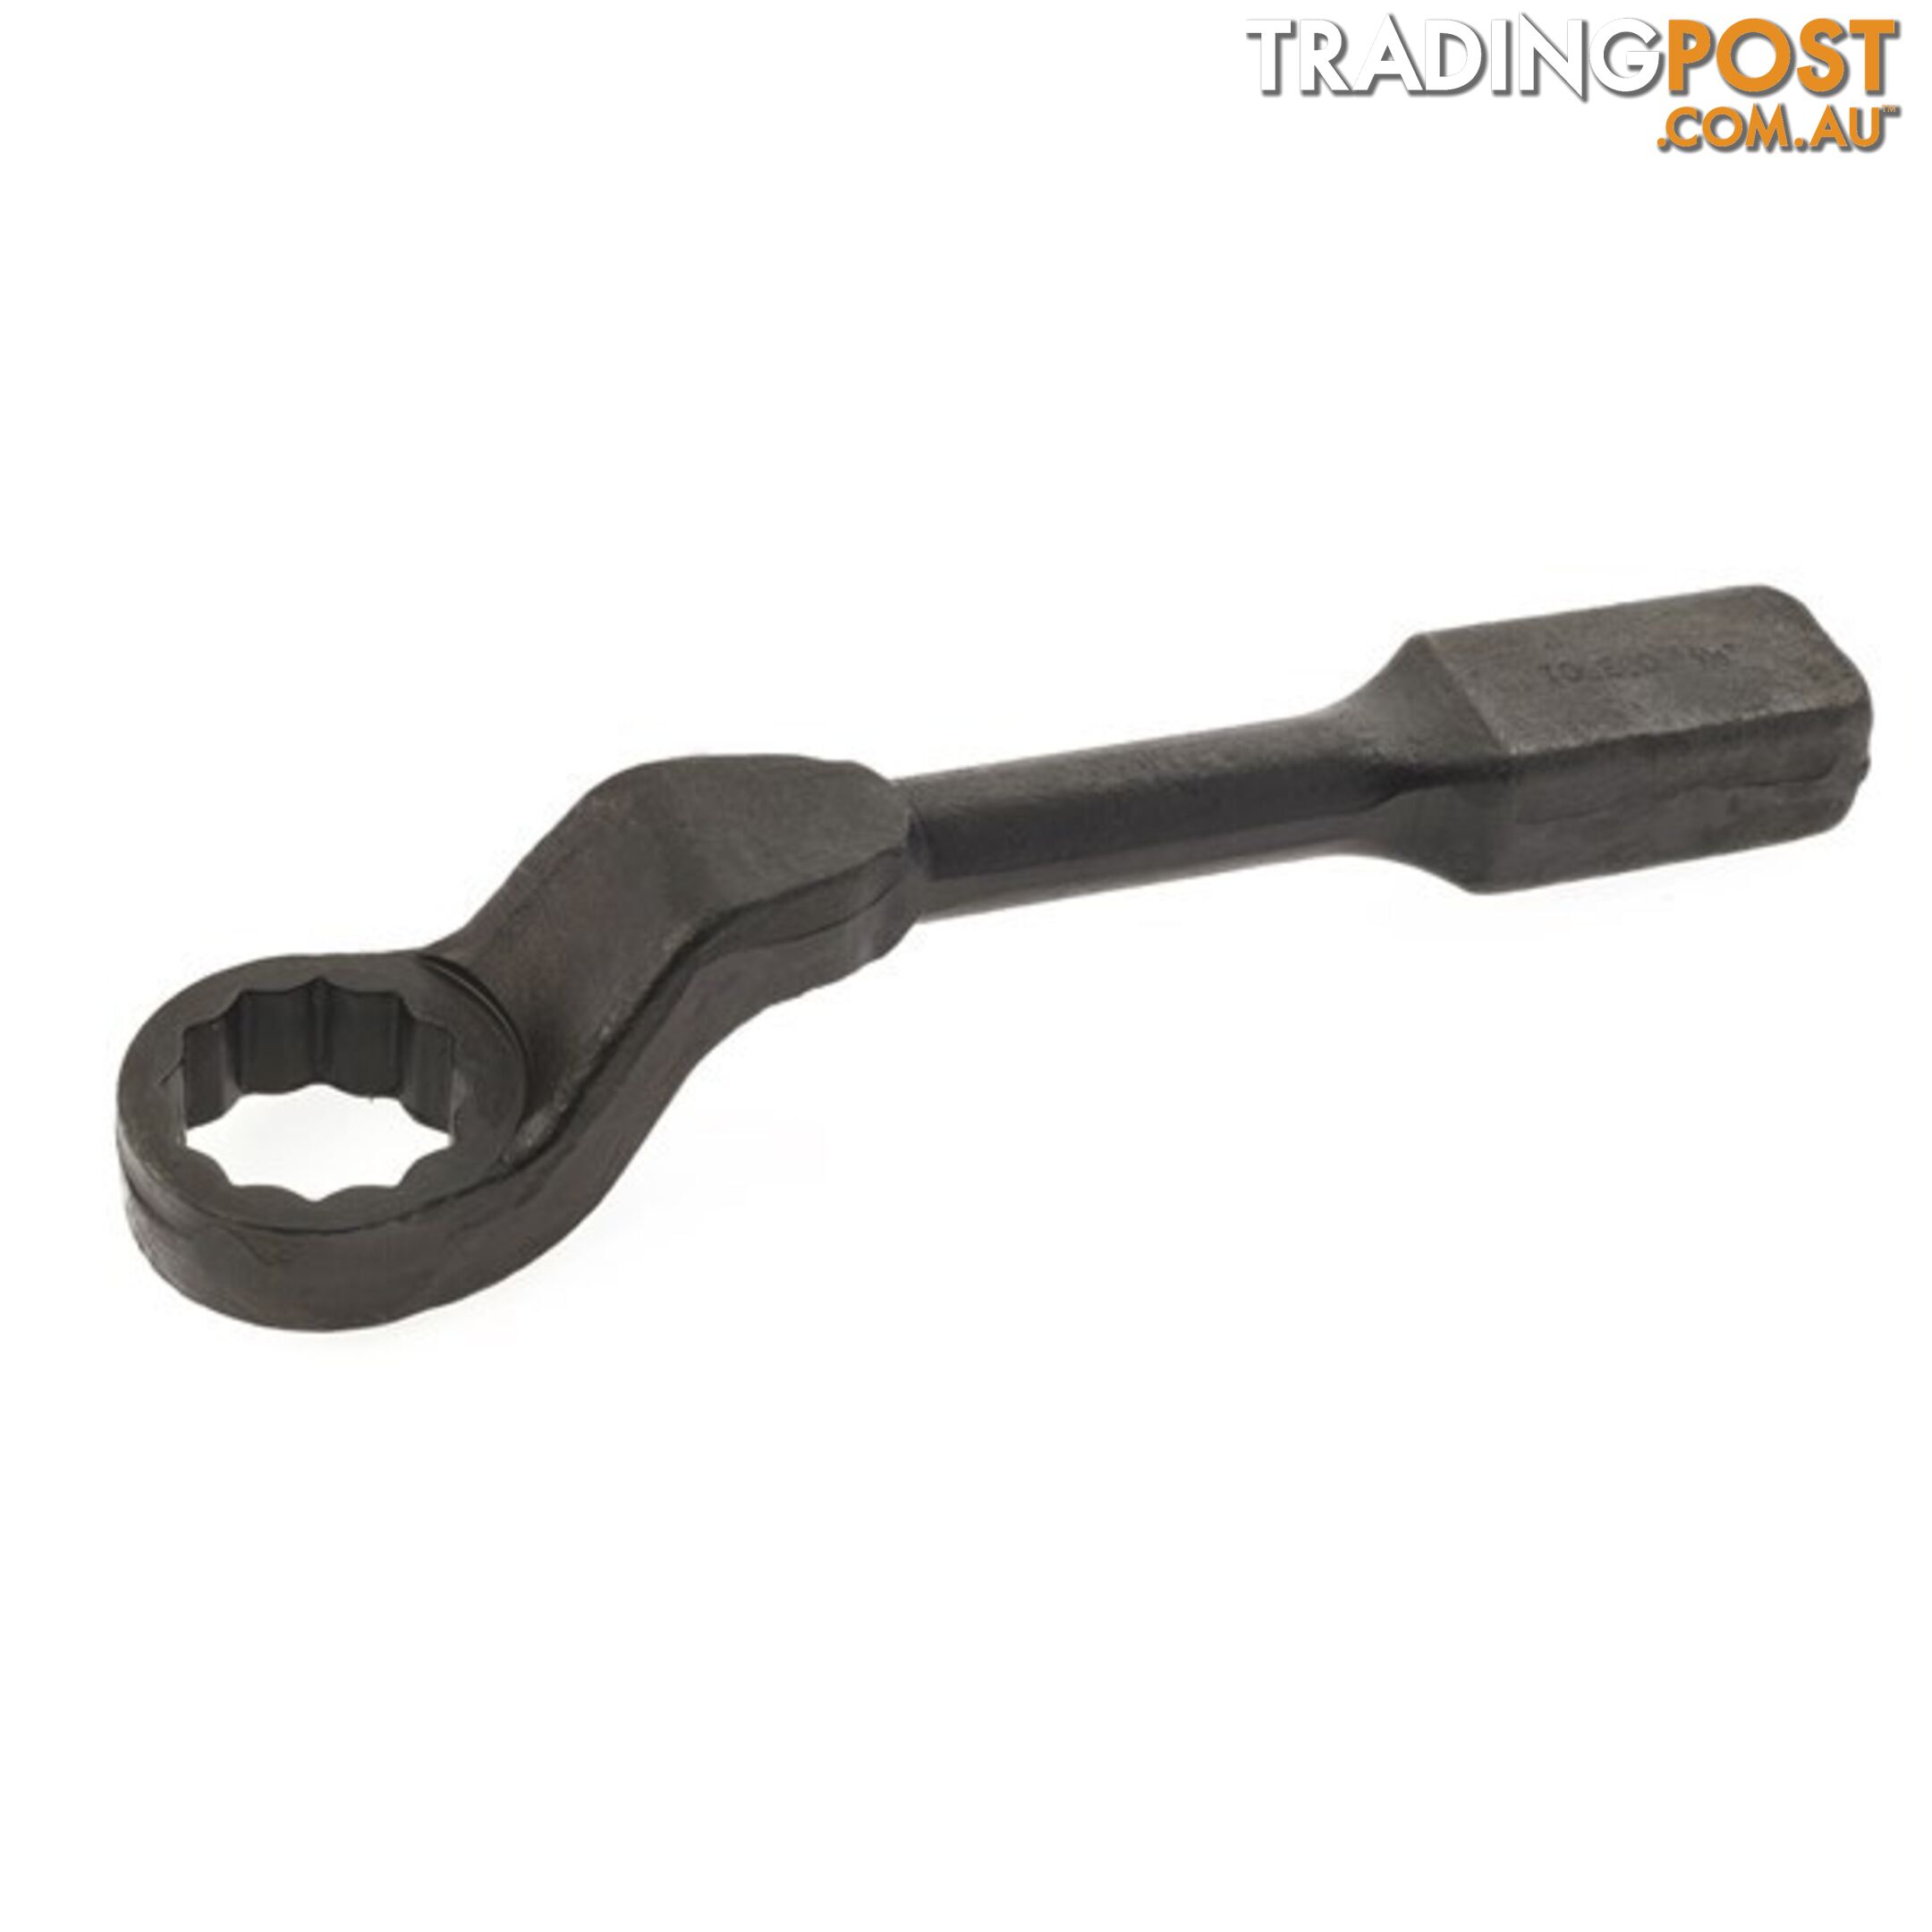 Offset / Cranked Slogging Wrench 1 1/2 " SKU - SWR1500C